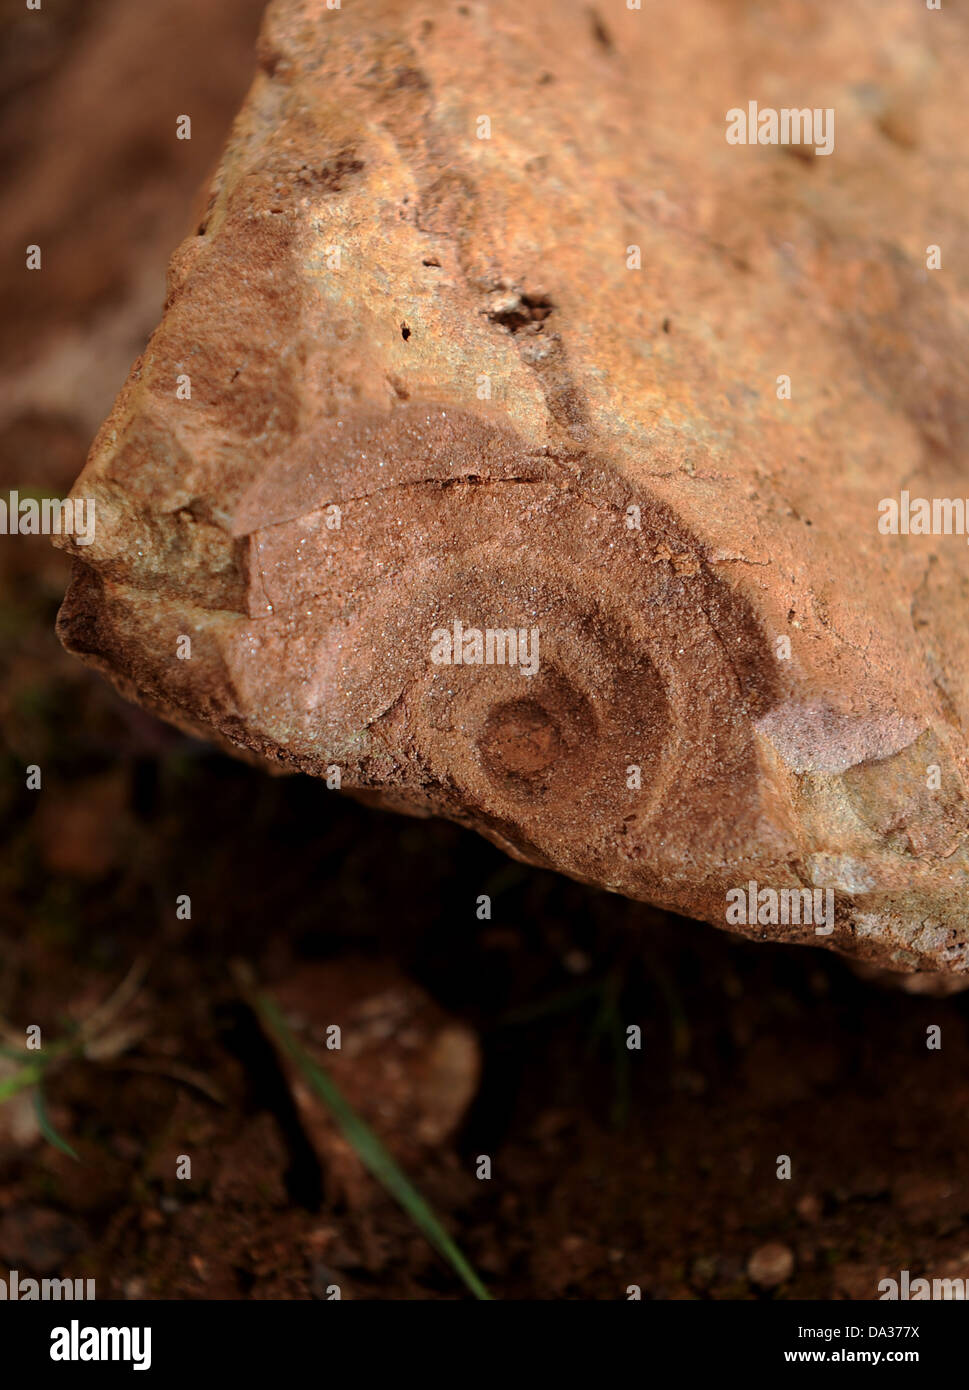 Un escargot fossile qui a un anti-horaire sur sa coquille en spirale, montrant que l'escargot était à l'origine sous l'équateur. Banque D'Images